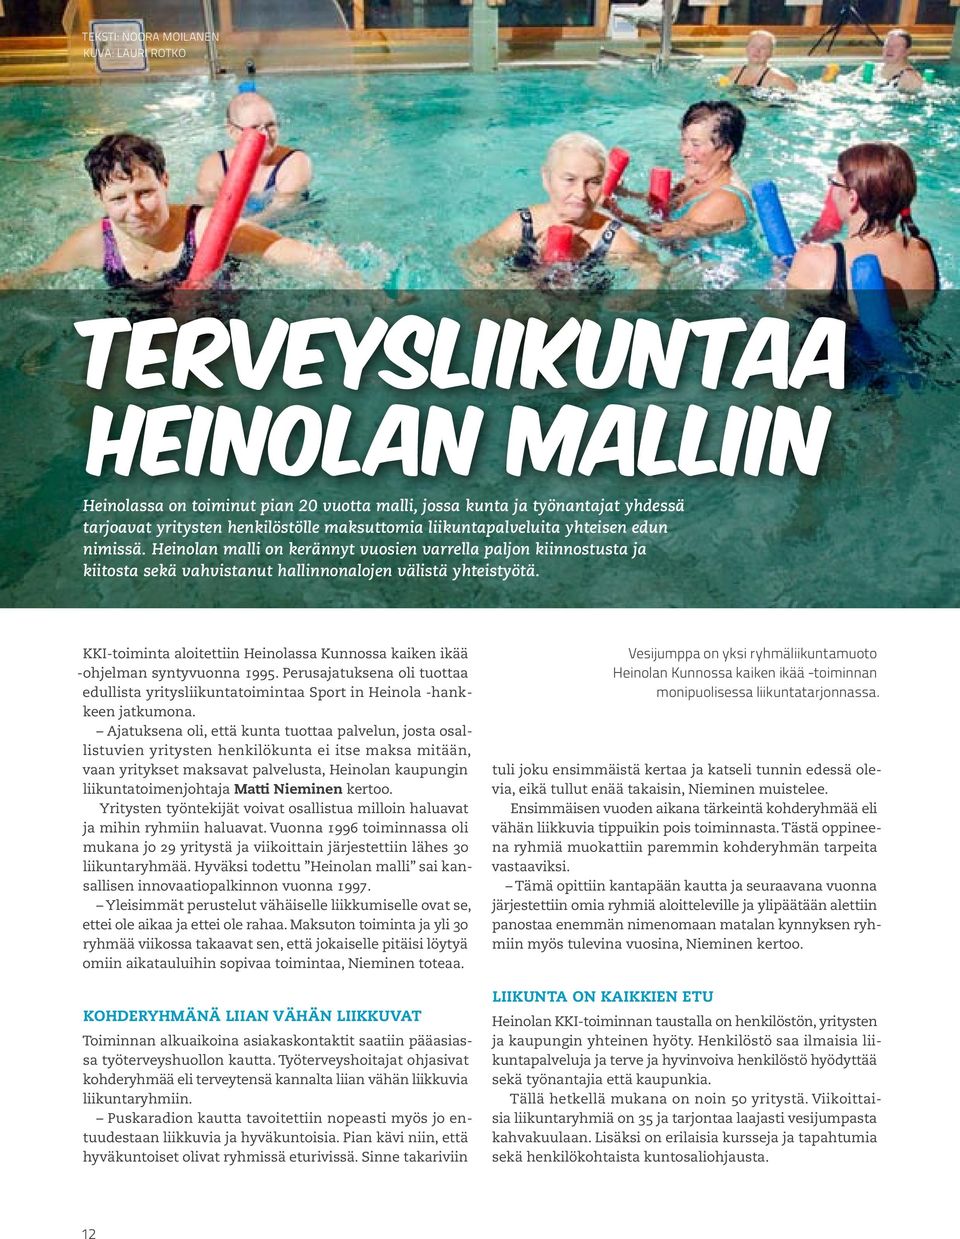 KKI-toiminta aloitettiin Heinolassa Kunnossa kaiken ikää -ohjelman syntyvuonna 1995. Perusajatuksena oli tuottaa edullista yritysliikuntatoimintaa Sport in Heinola -hankkeen jatkumona.